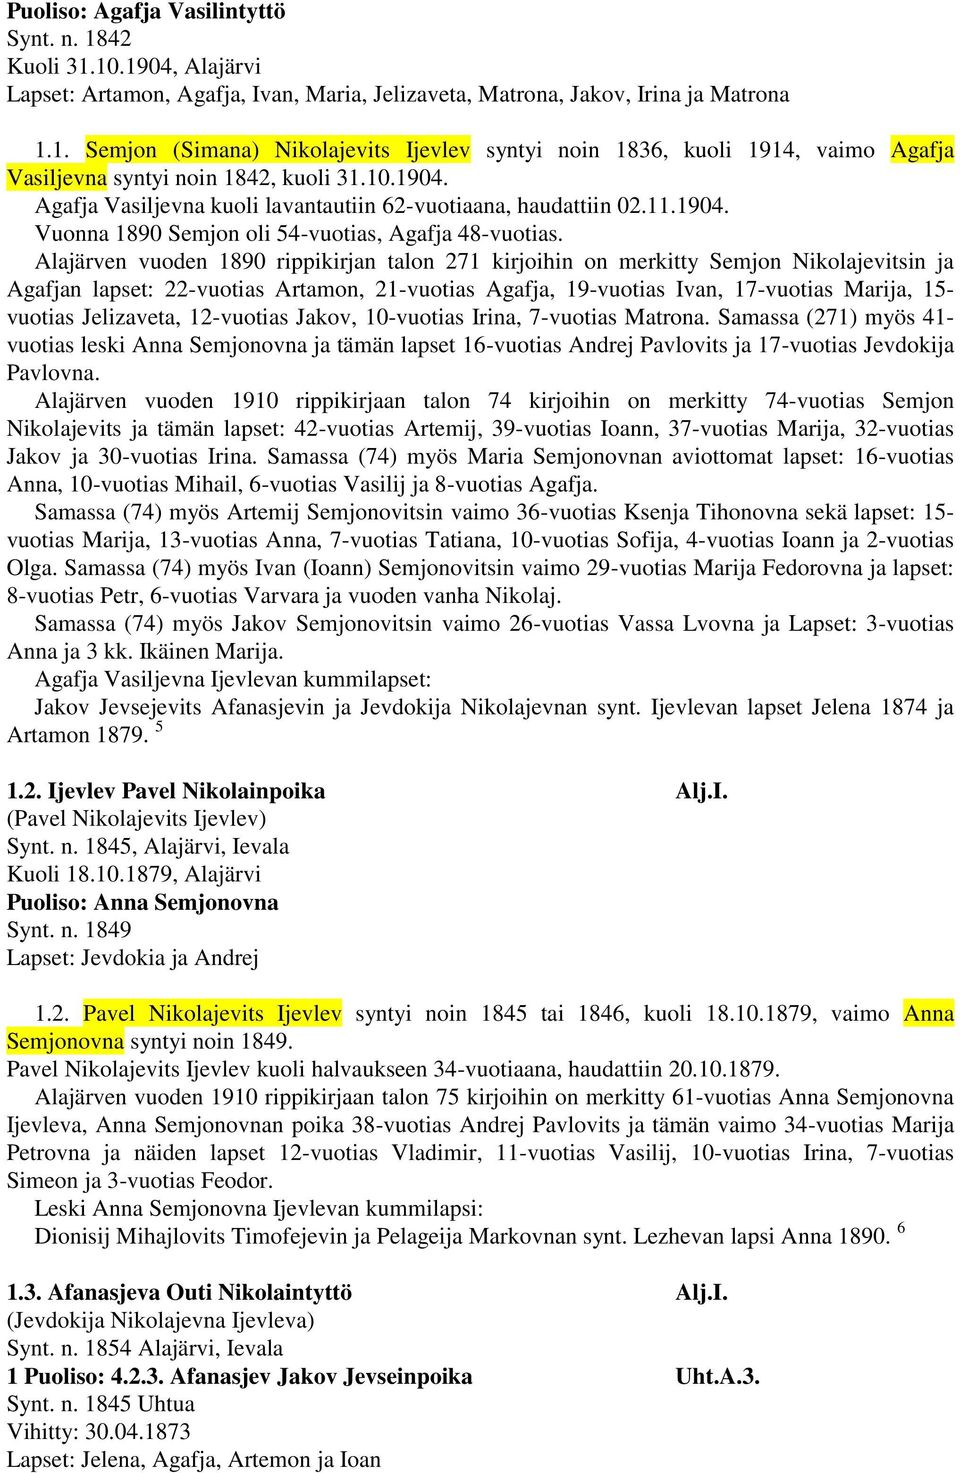 Alajärven vuoden 1890 rippikirjan talon 271 kirjoihin on merkitty Semjon Nikolajevitsin ja Agafjan lapset: 22-vuotias Artamon, 21-vuotias Agafja, 19-vuotias Ivan, 17-vuotias Marija, 15- vuotias